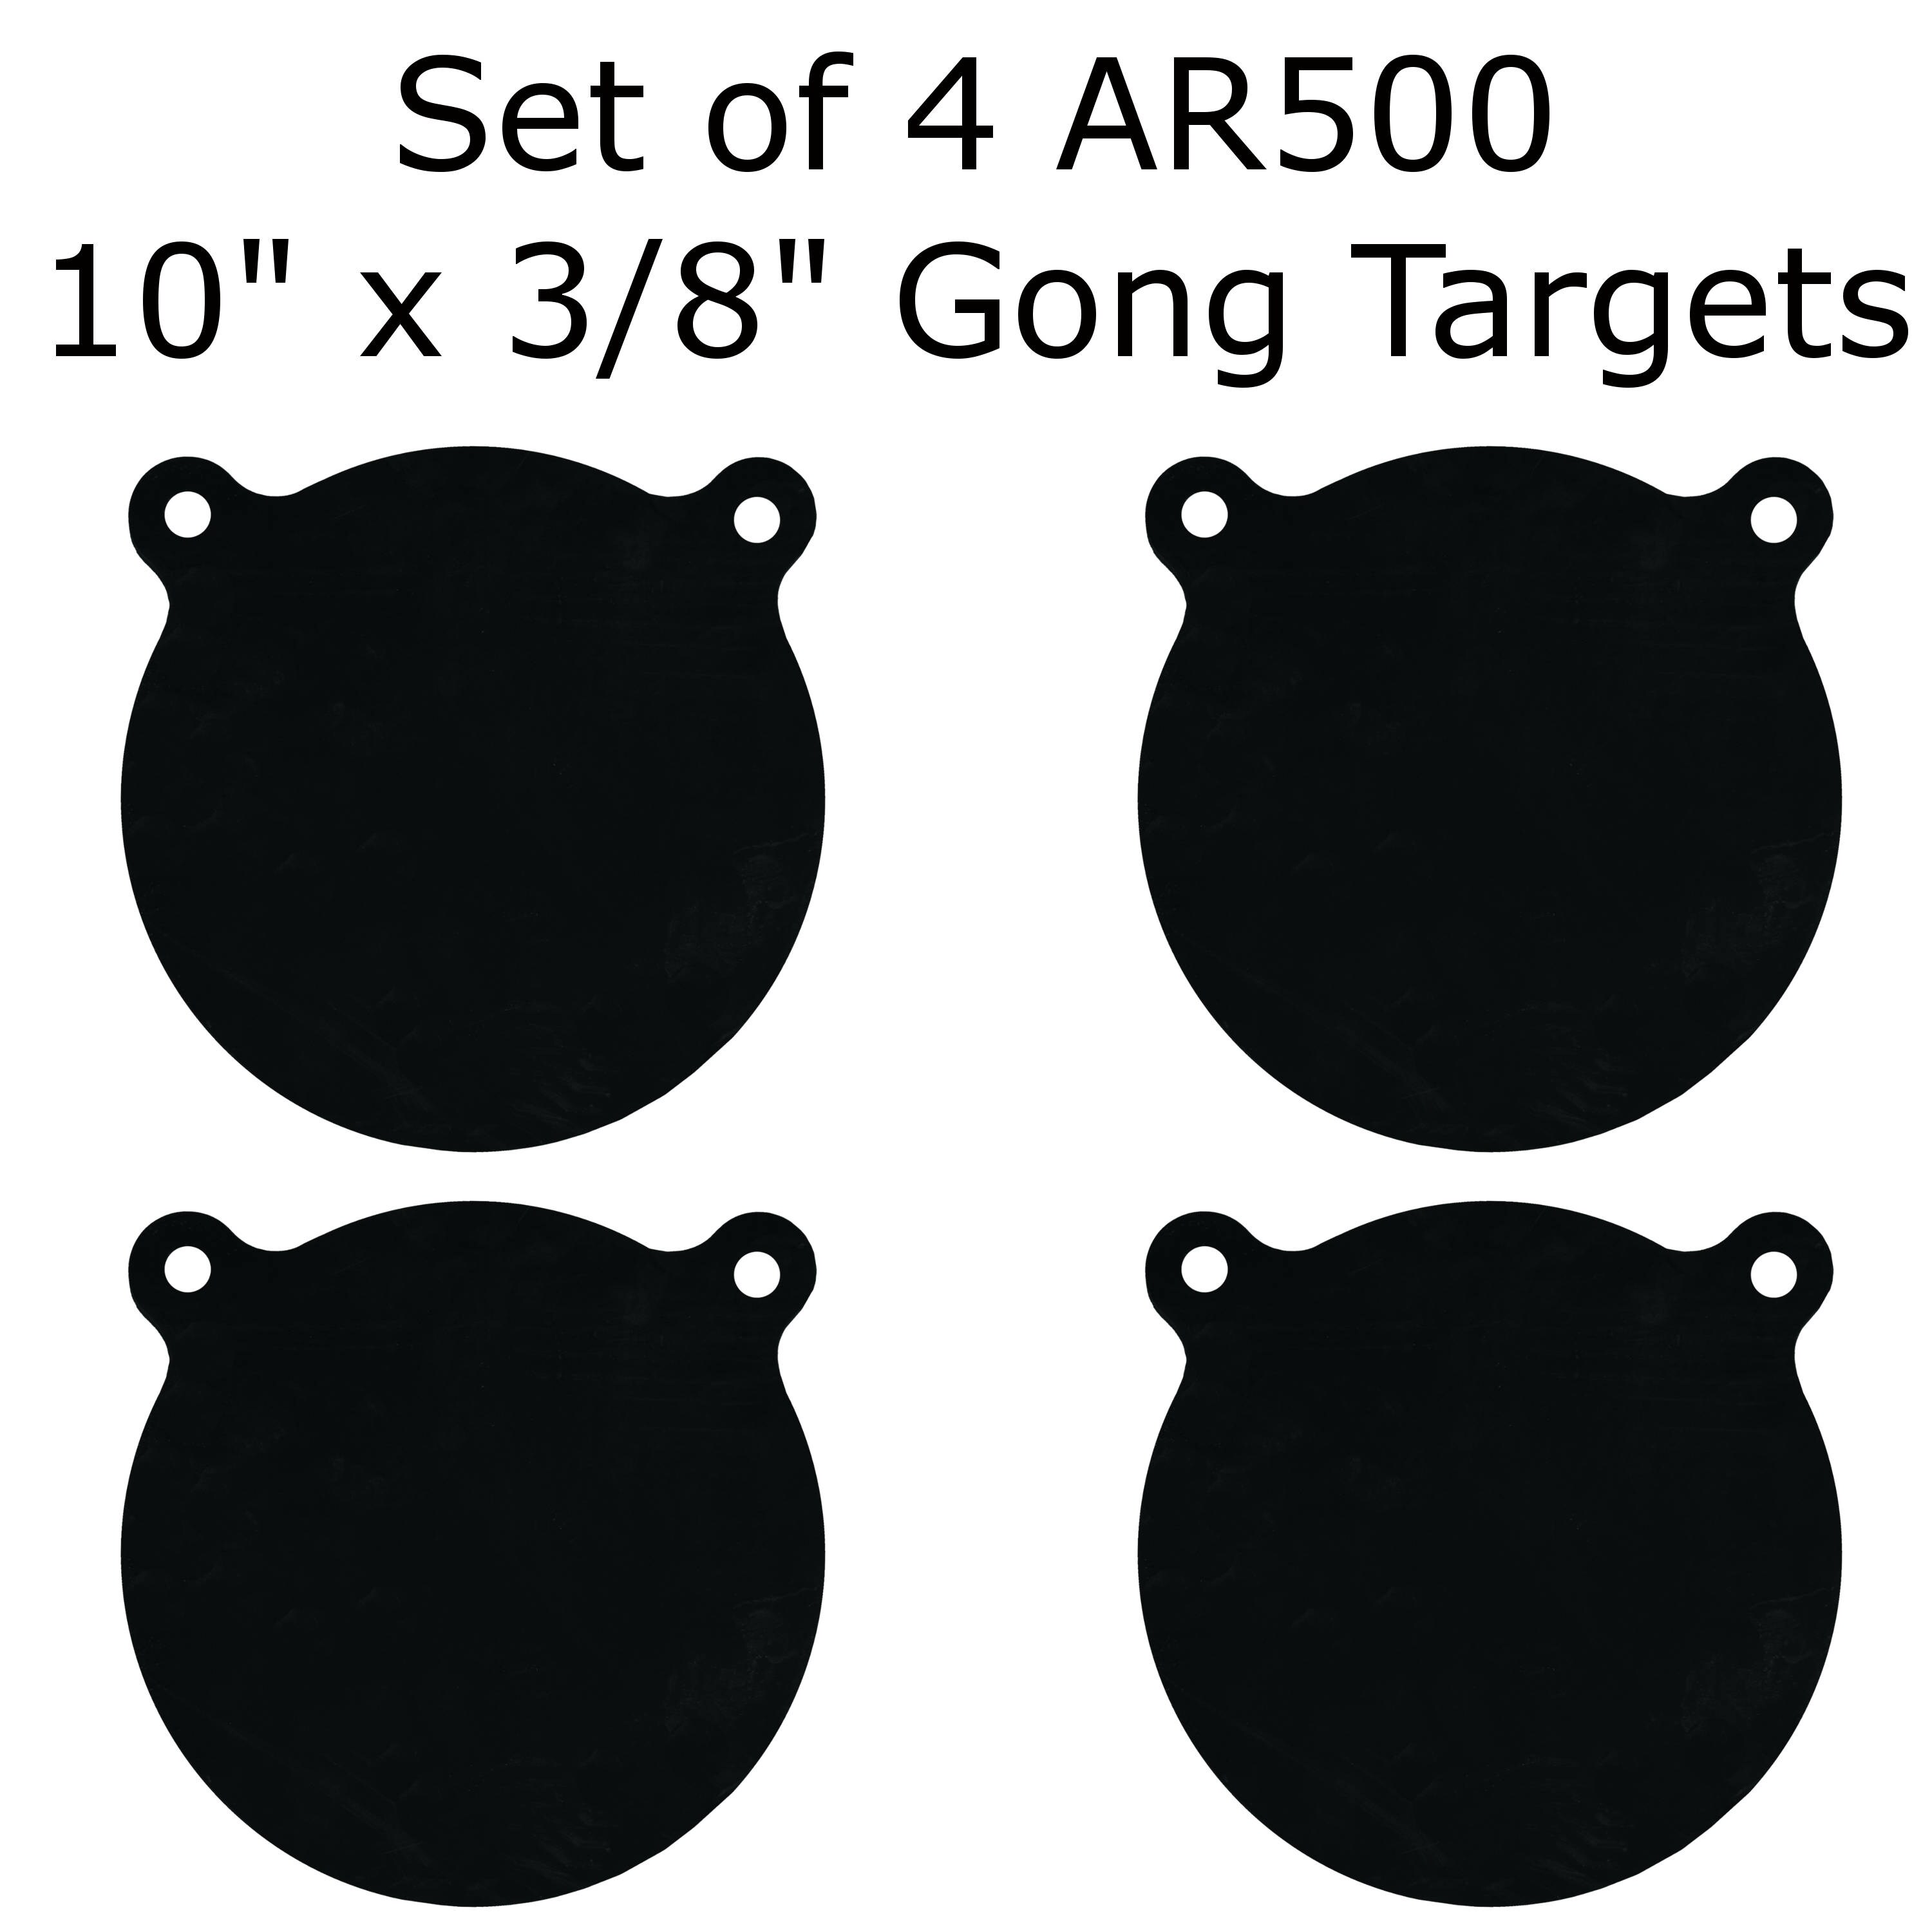 16" Painted Black Shooting Practice Range M AR500 Steel Target Gong 3/8" x 6" 